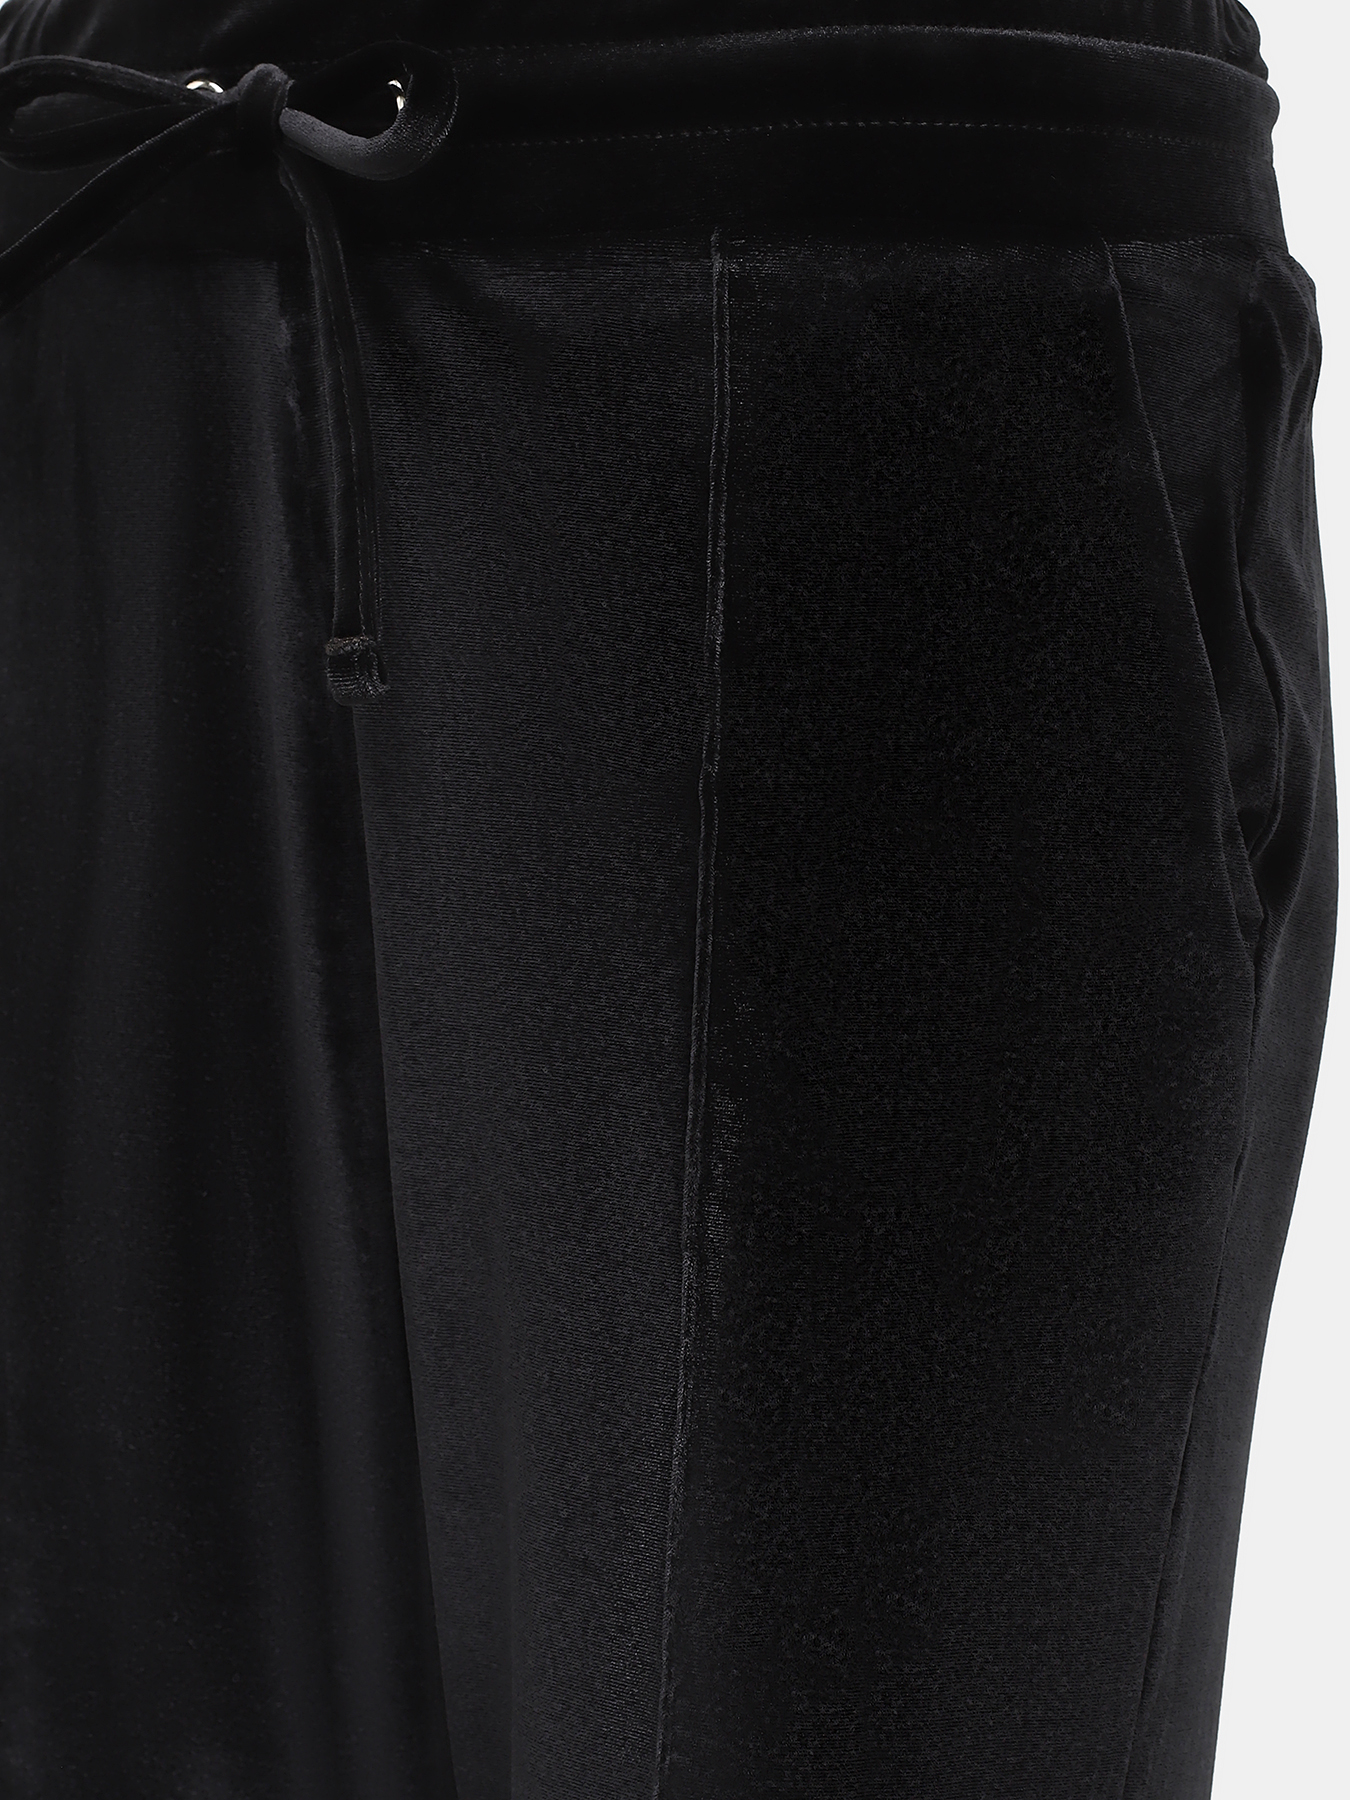 Спортивные брюки EA7 Emporio Armani 423041-042, цвет черный, размер 42-44 - фото 3